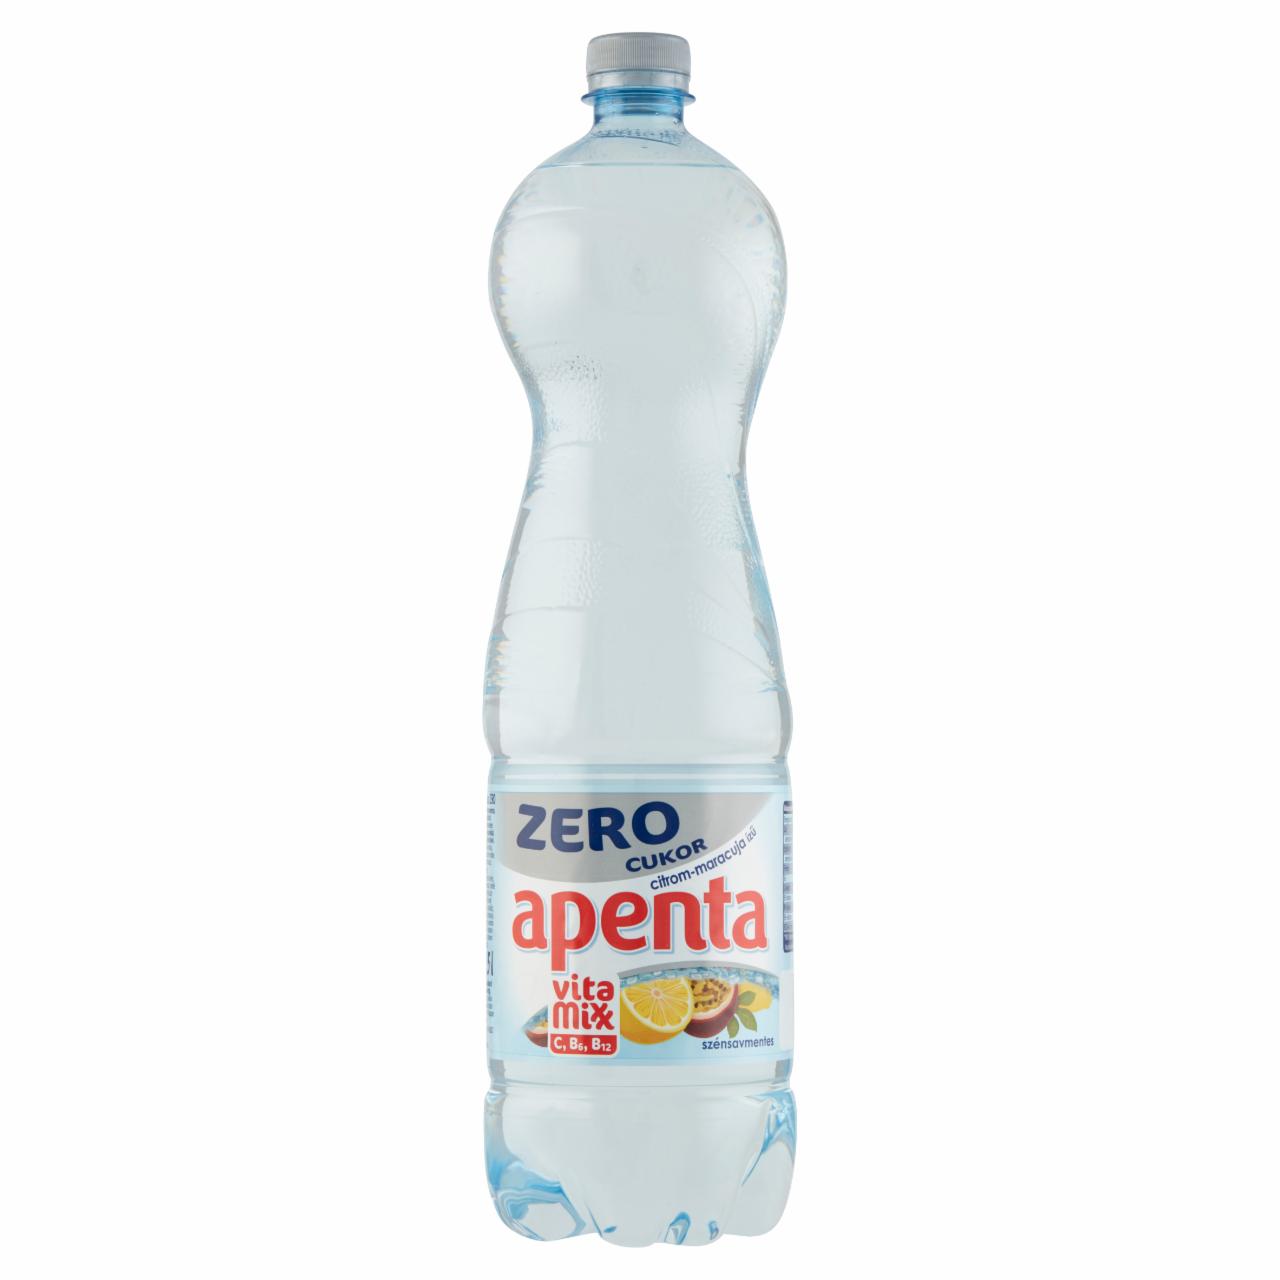 Képek - Apenta Vitamixx Zero citrom-maracuja ízű szénsavmentes, energiamentes üdítőital 1,5 l